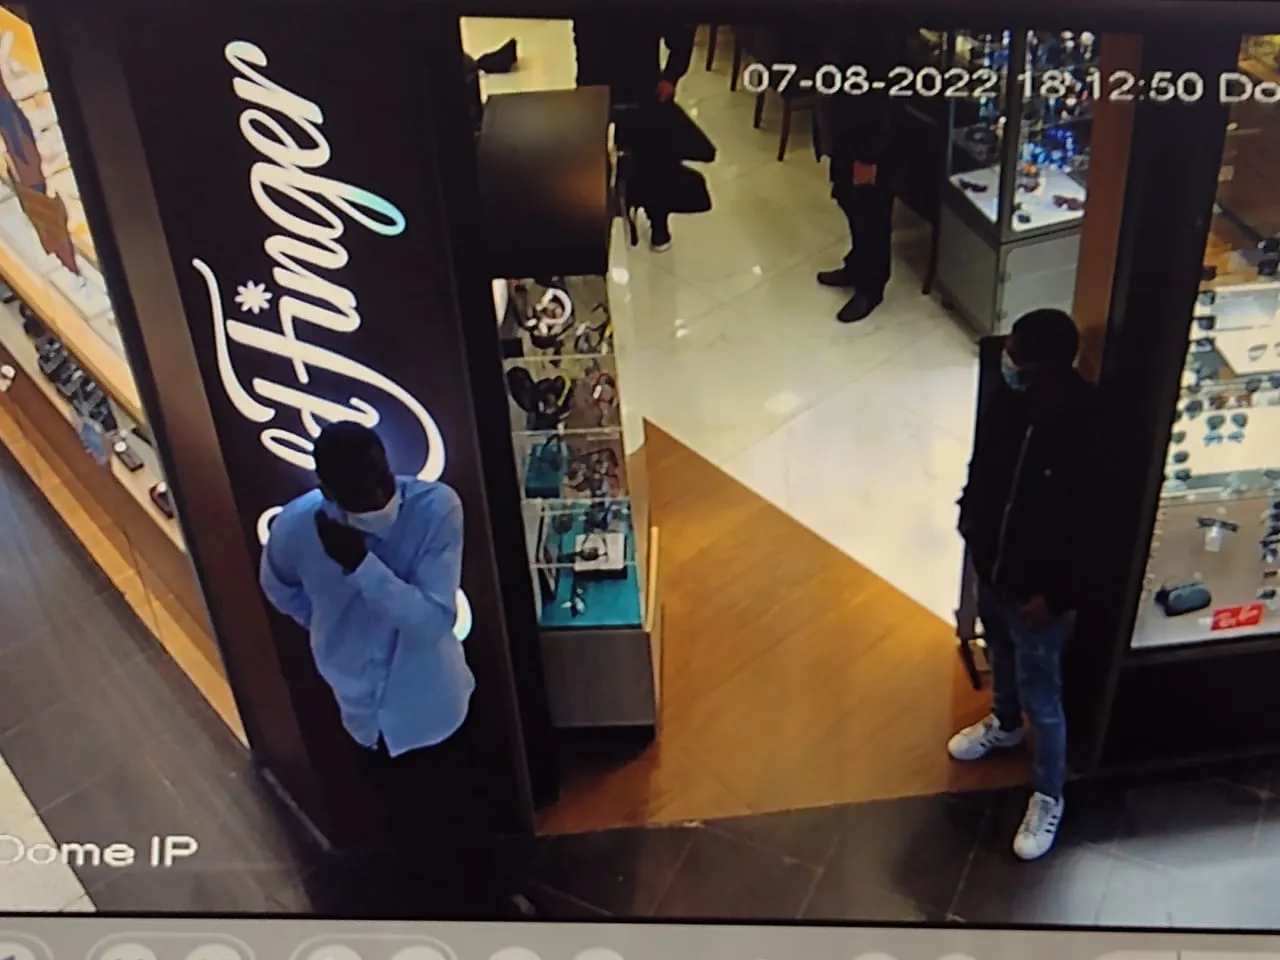 Todo o crime e a movimentação do grupo pelo shopping foi flagrada por câmeras de segurança